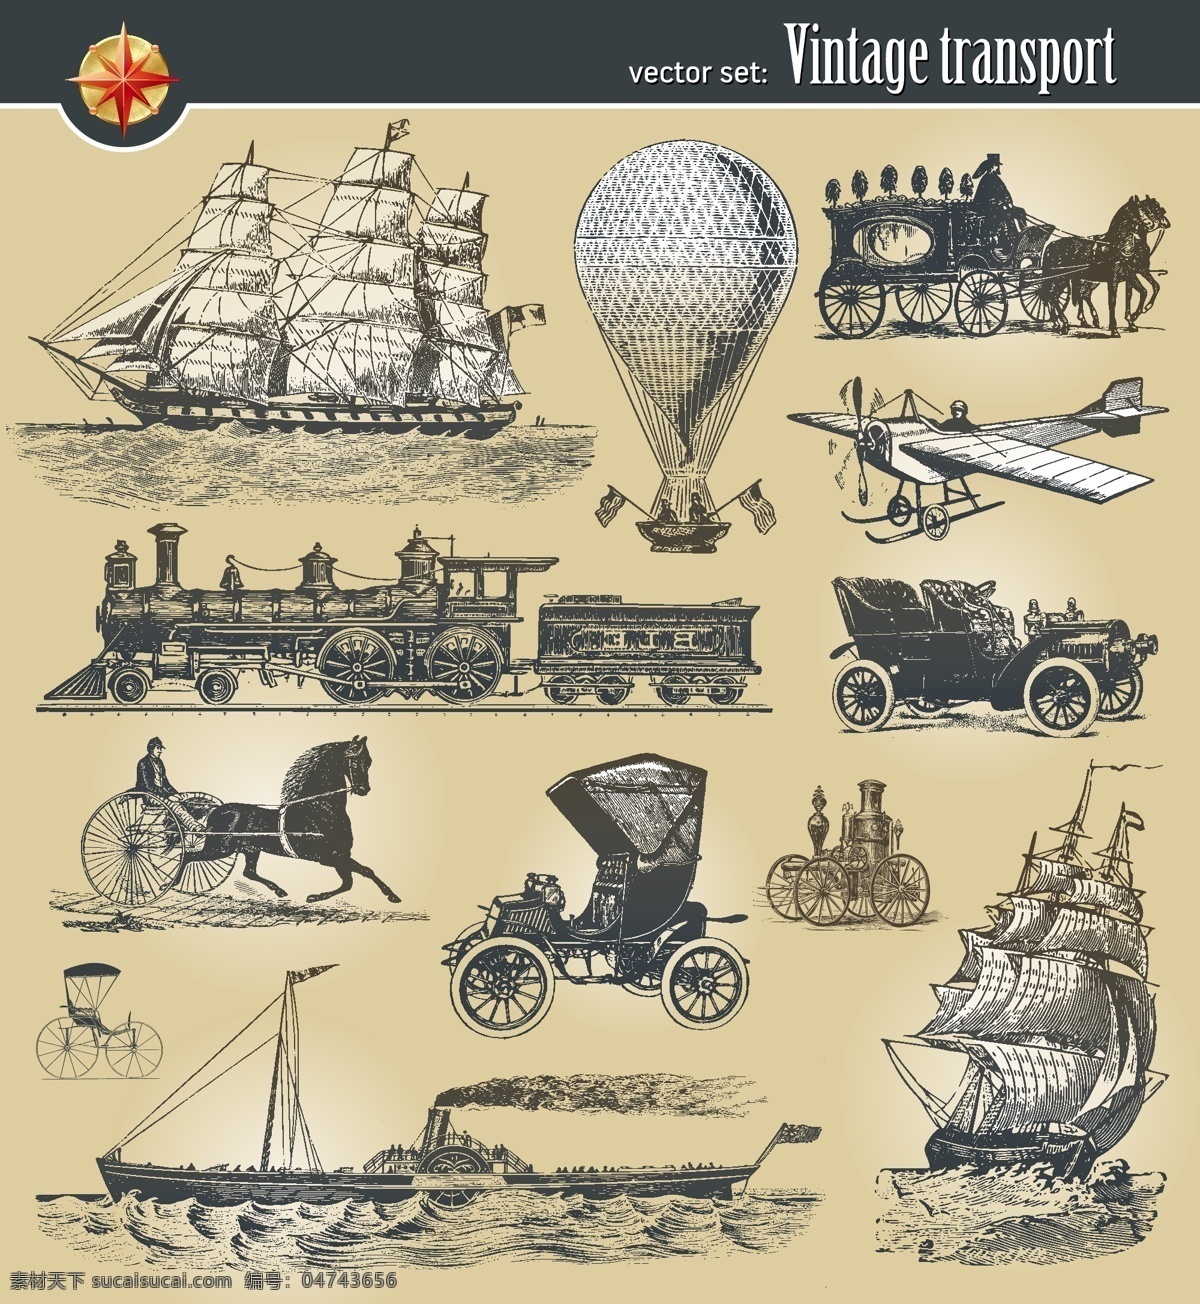 欧洲 古典 帆船 马 拉车 飞机 热气球 船 海盗船 欧洲古典 火车 马拉车 古老交通工具 欧洲元素 素描插画 剪影 现代科技 交通工具